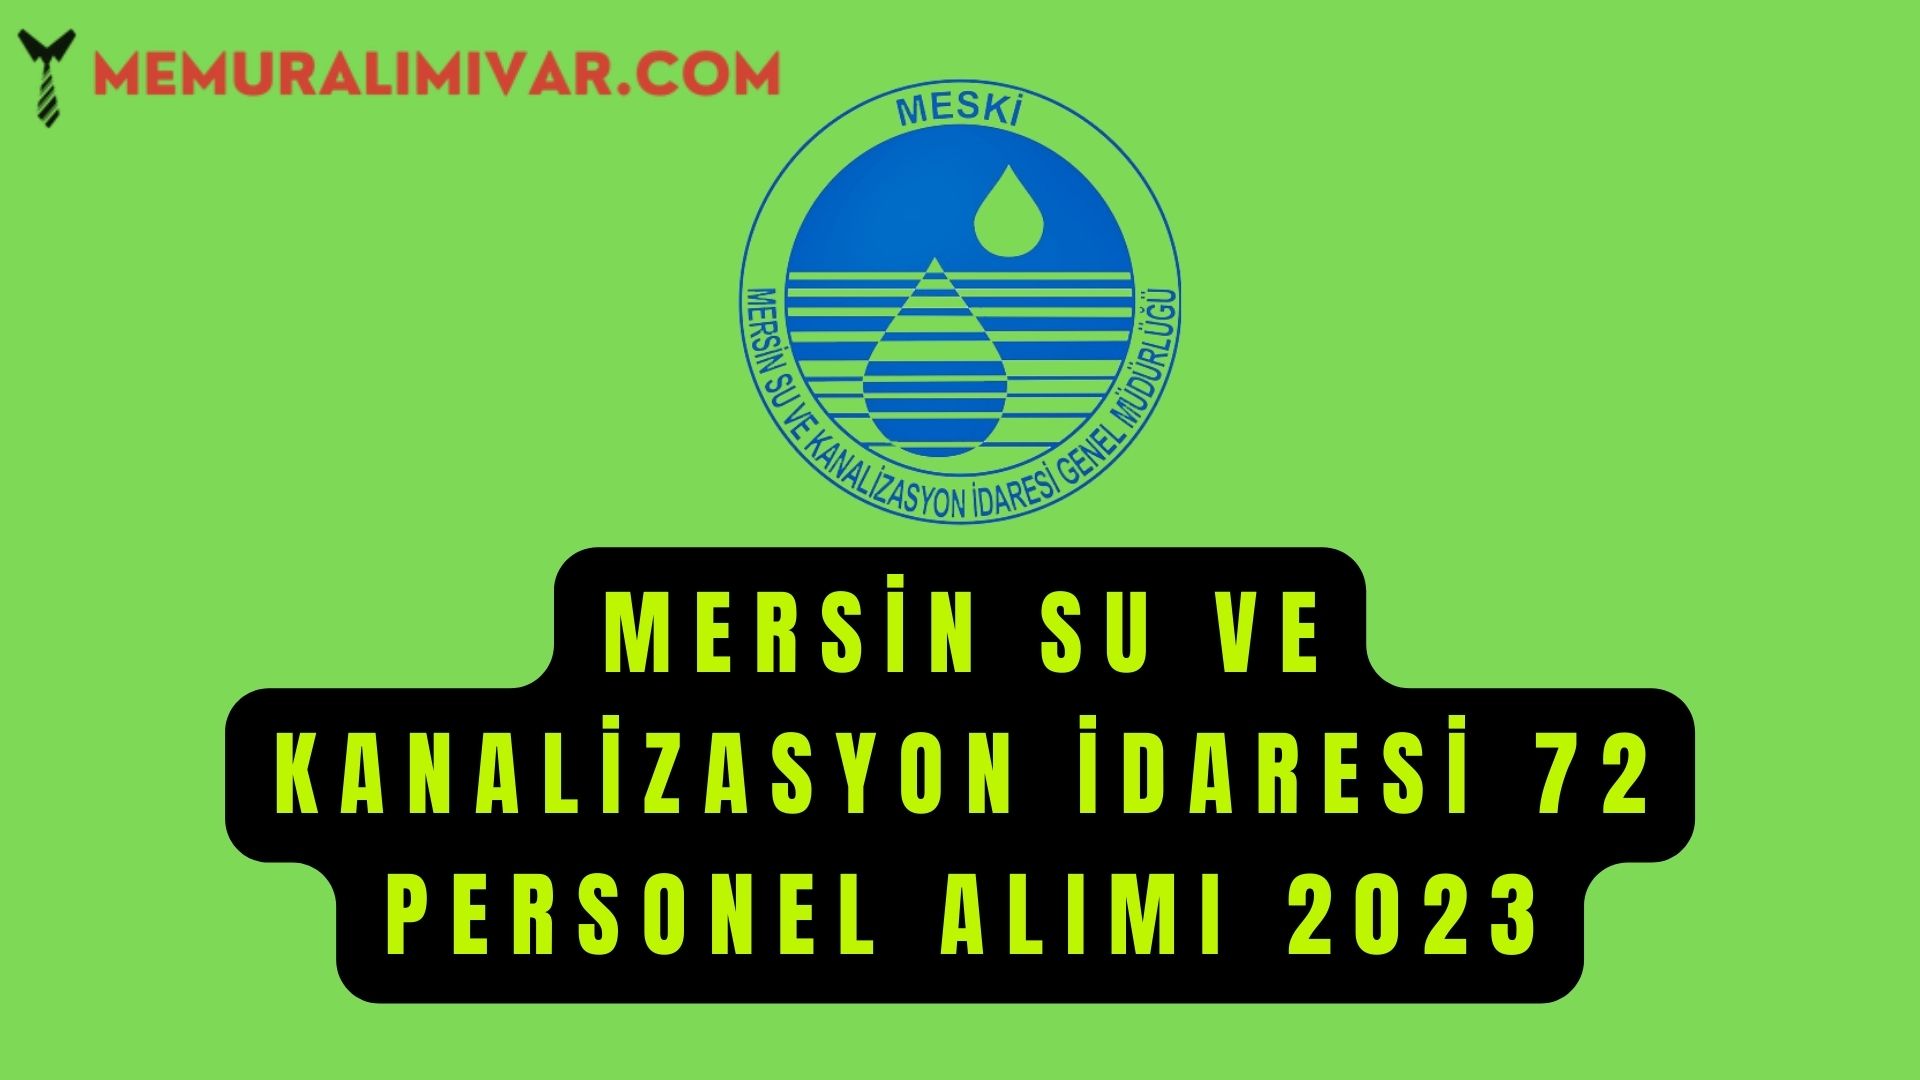 Mersin Su ve Kanalizasyon İdaresi 72 Personel Alımı 2023 Başvuru Formu